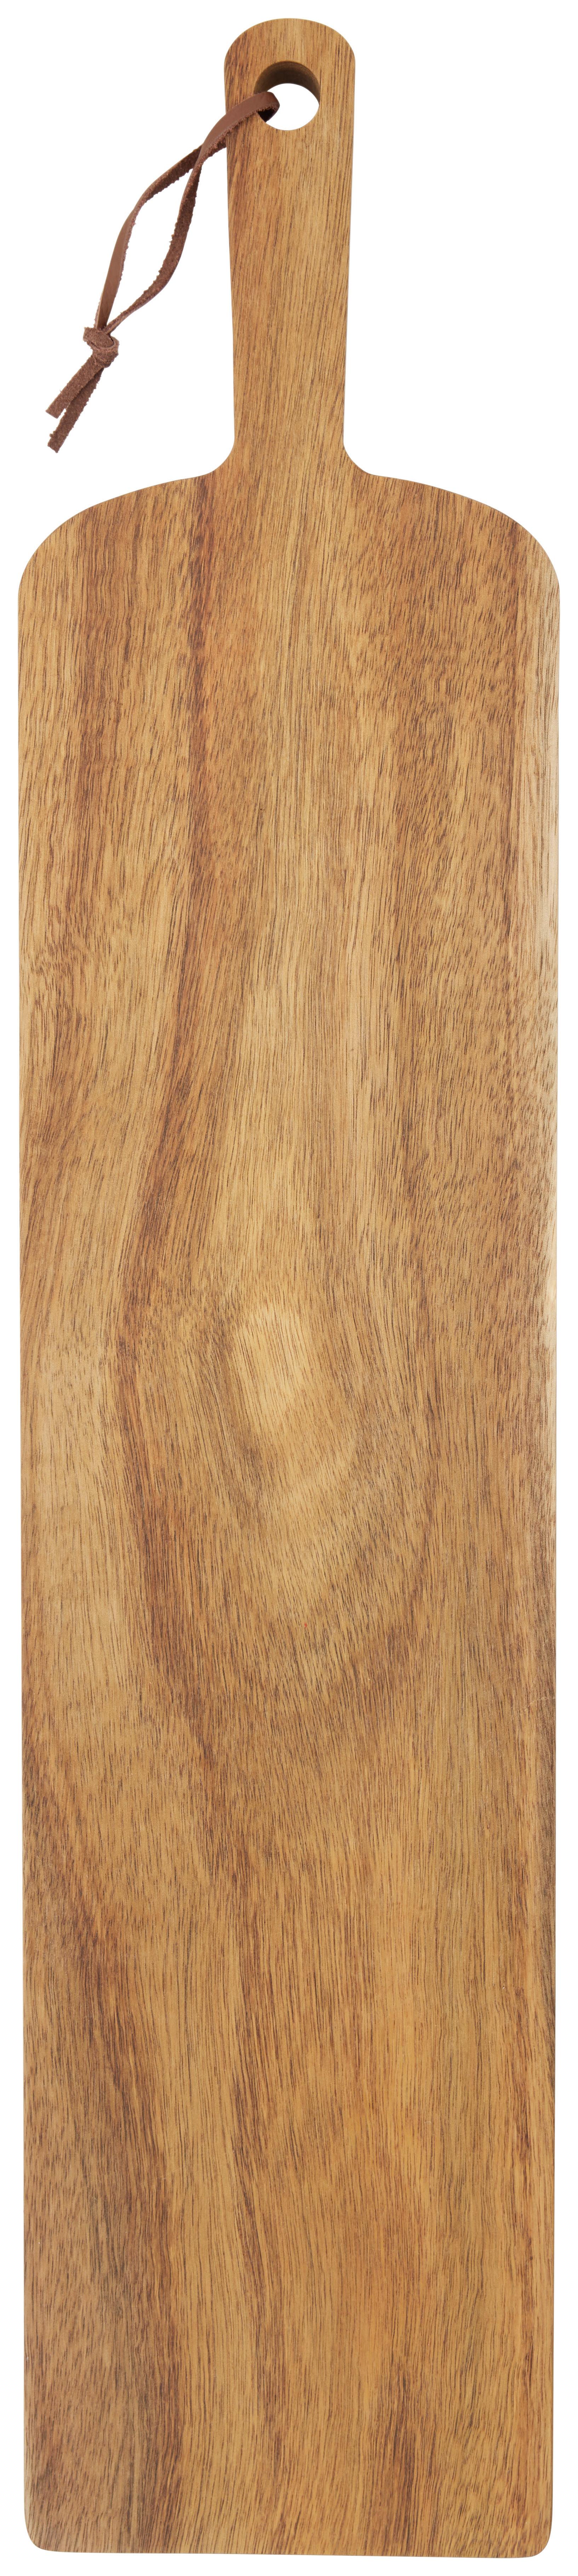 Daska Za Rezanje 13/60 Cm North Breeze - boje bagrema, Konventionell, drvo (13/60cm) - Zandiara